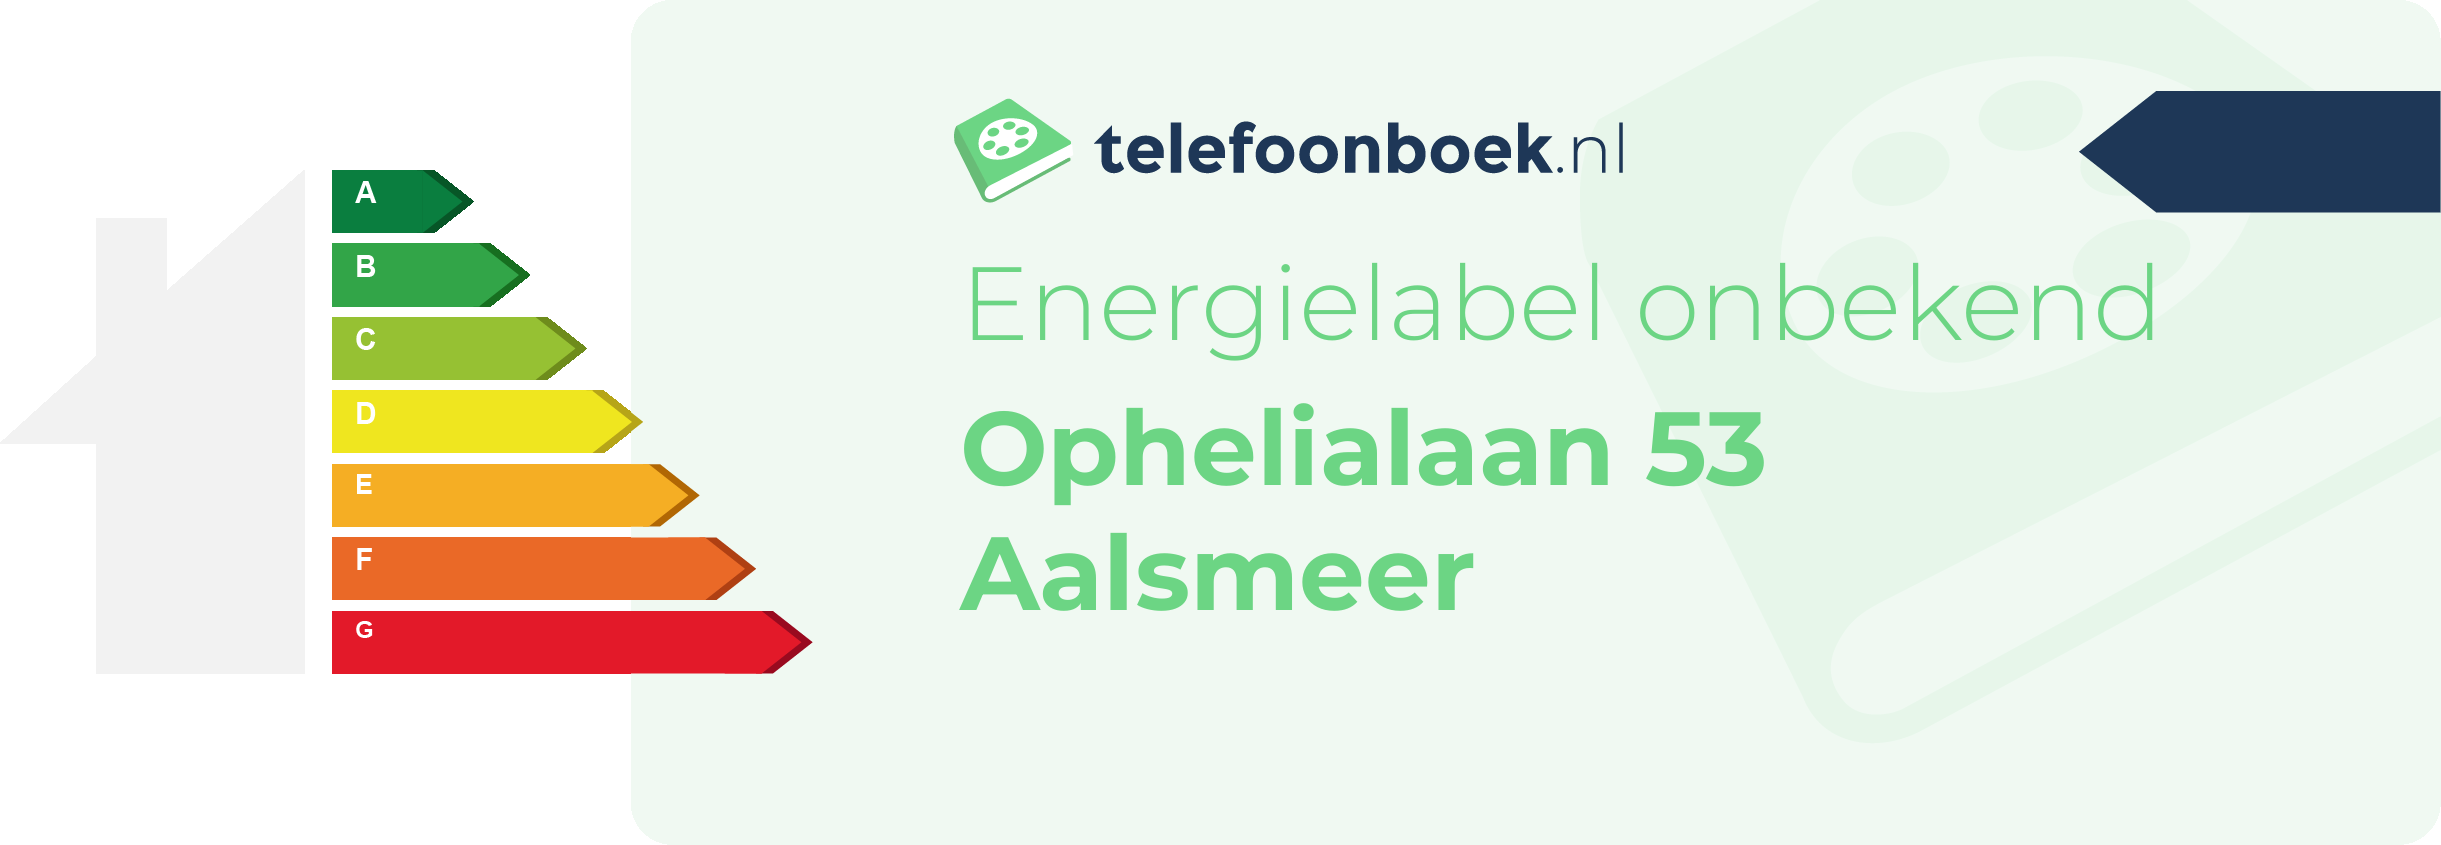 Energielabel Ophelialaan 53 Aalsmeer